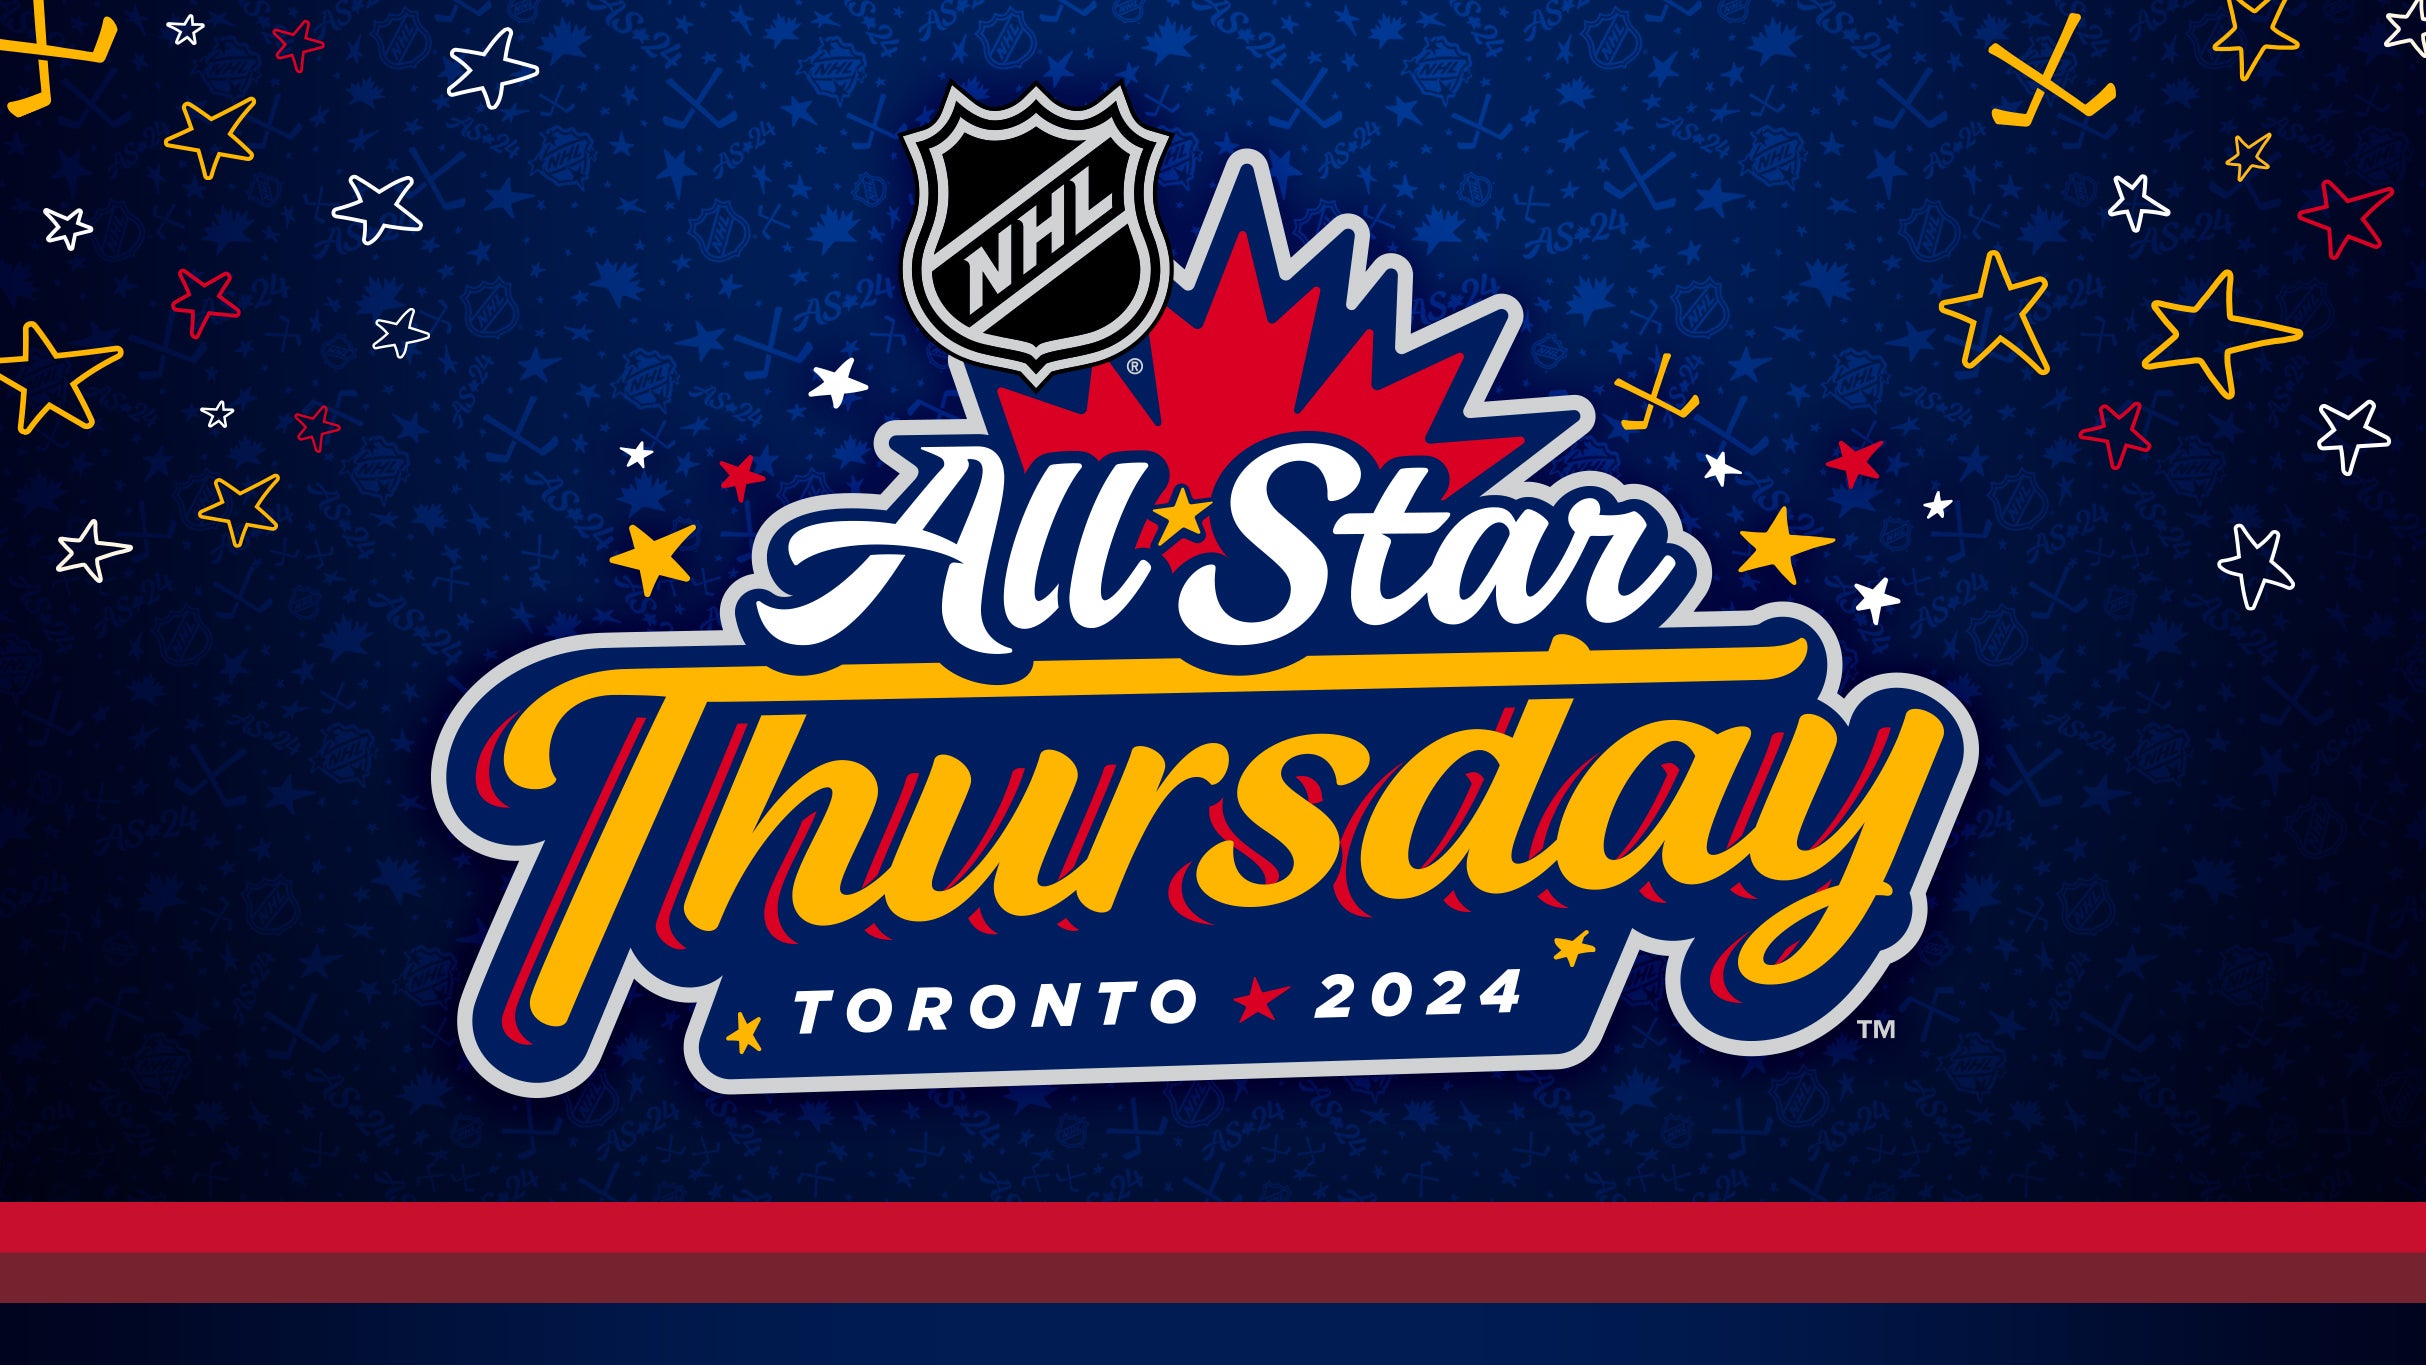 NHL All-Star Thursday presale code